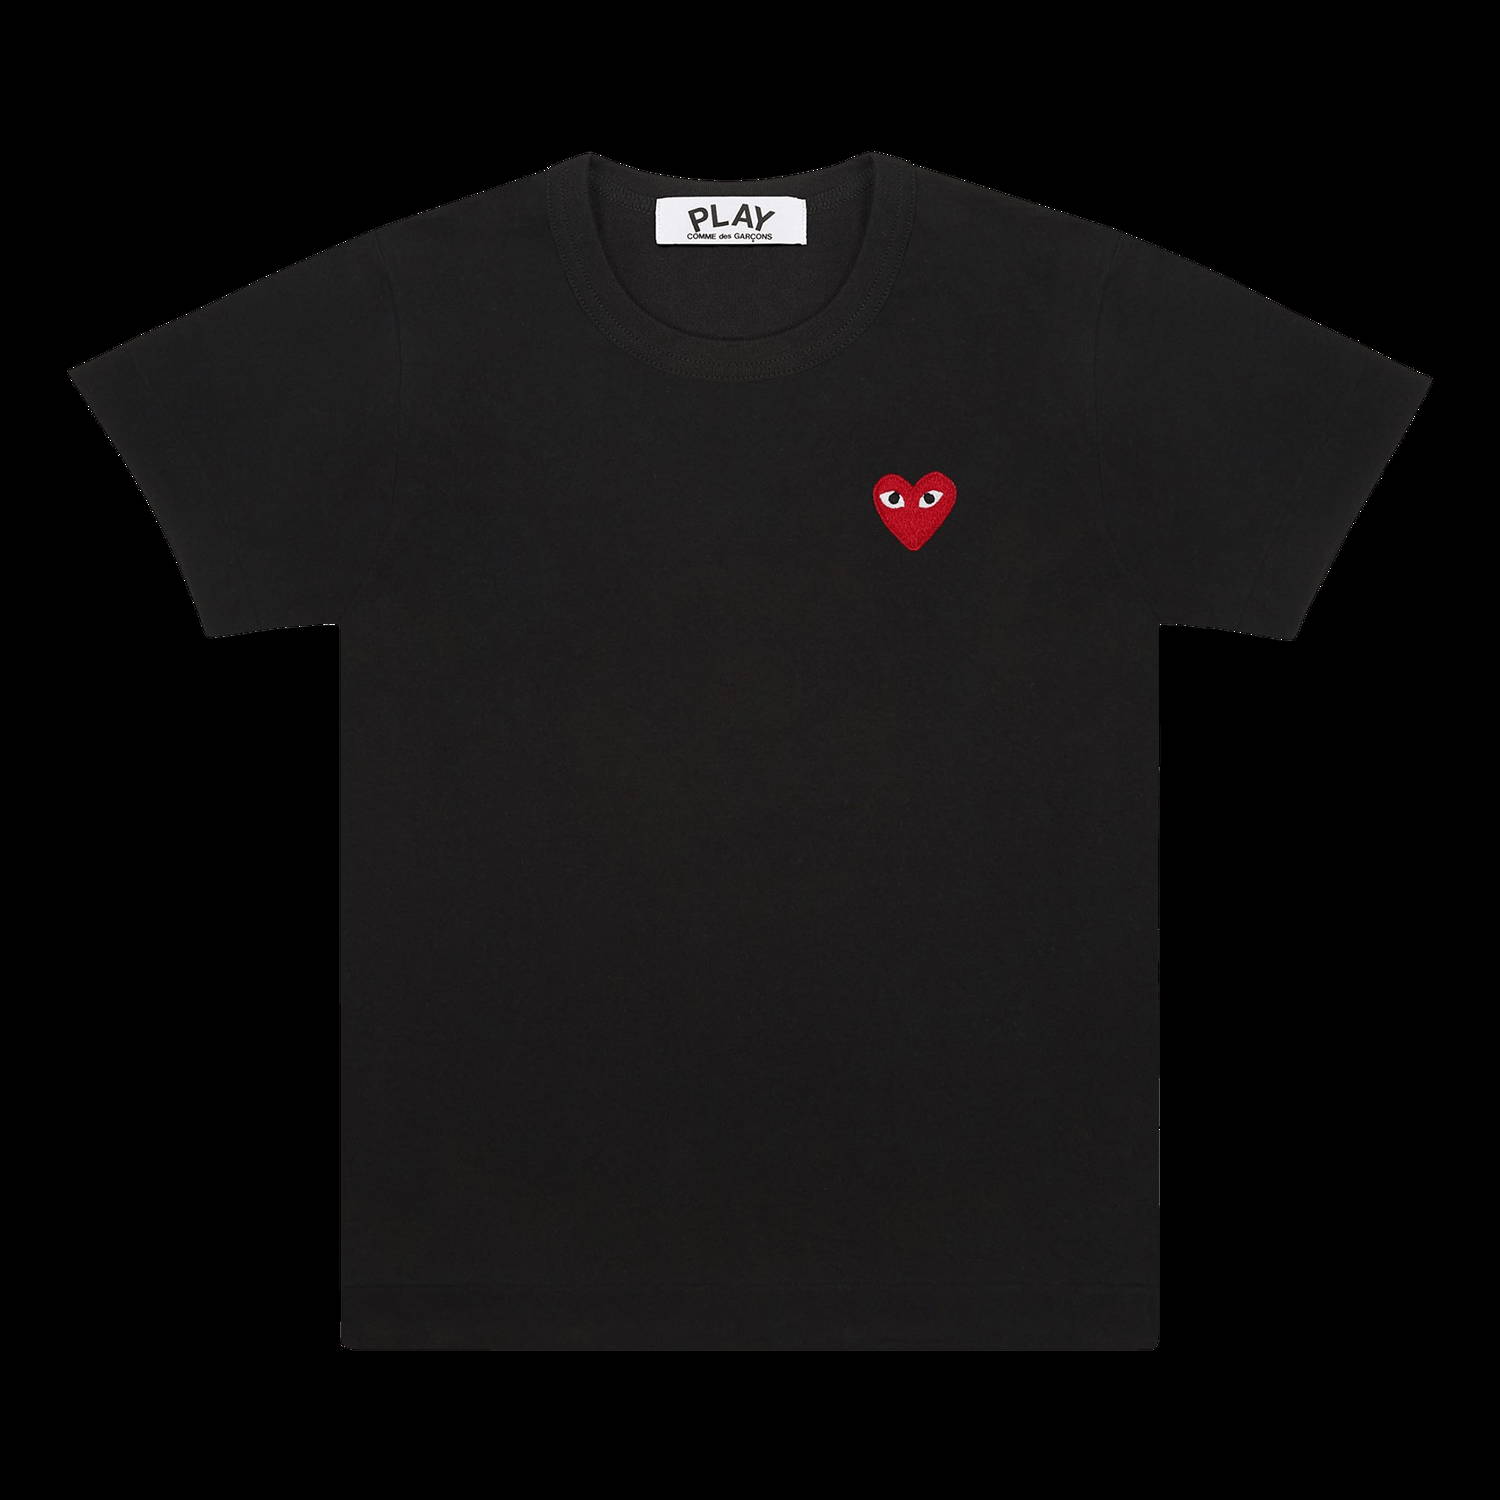 PLAY Heart T-Shirt